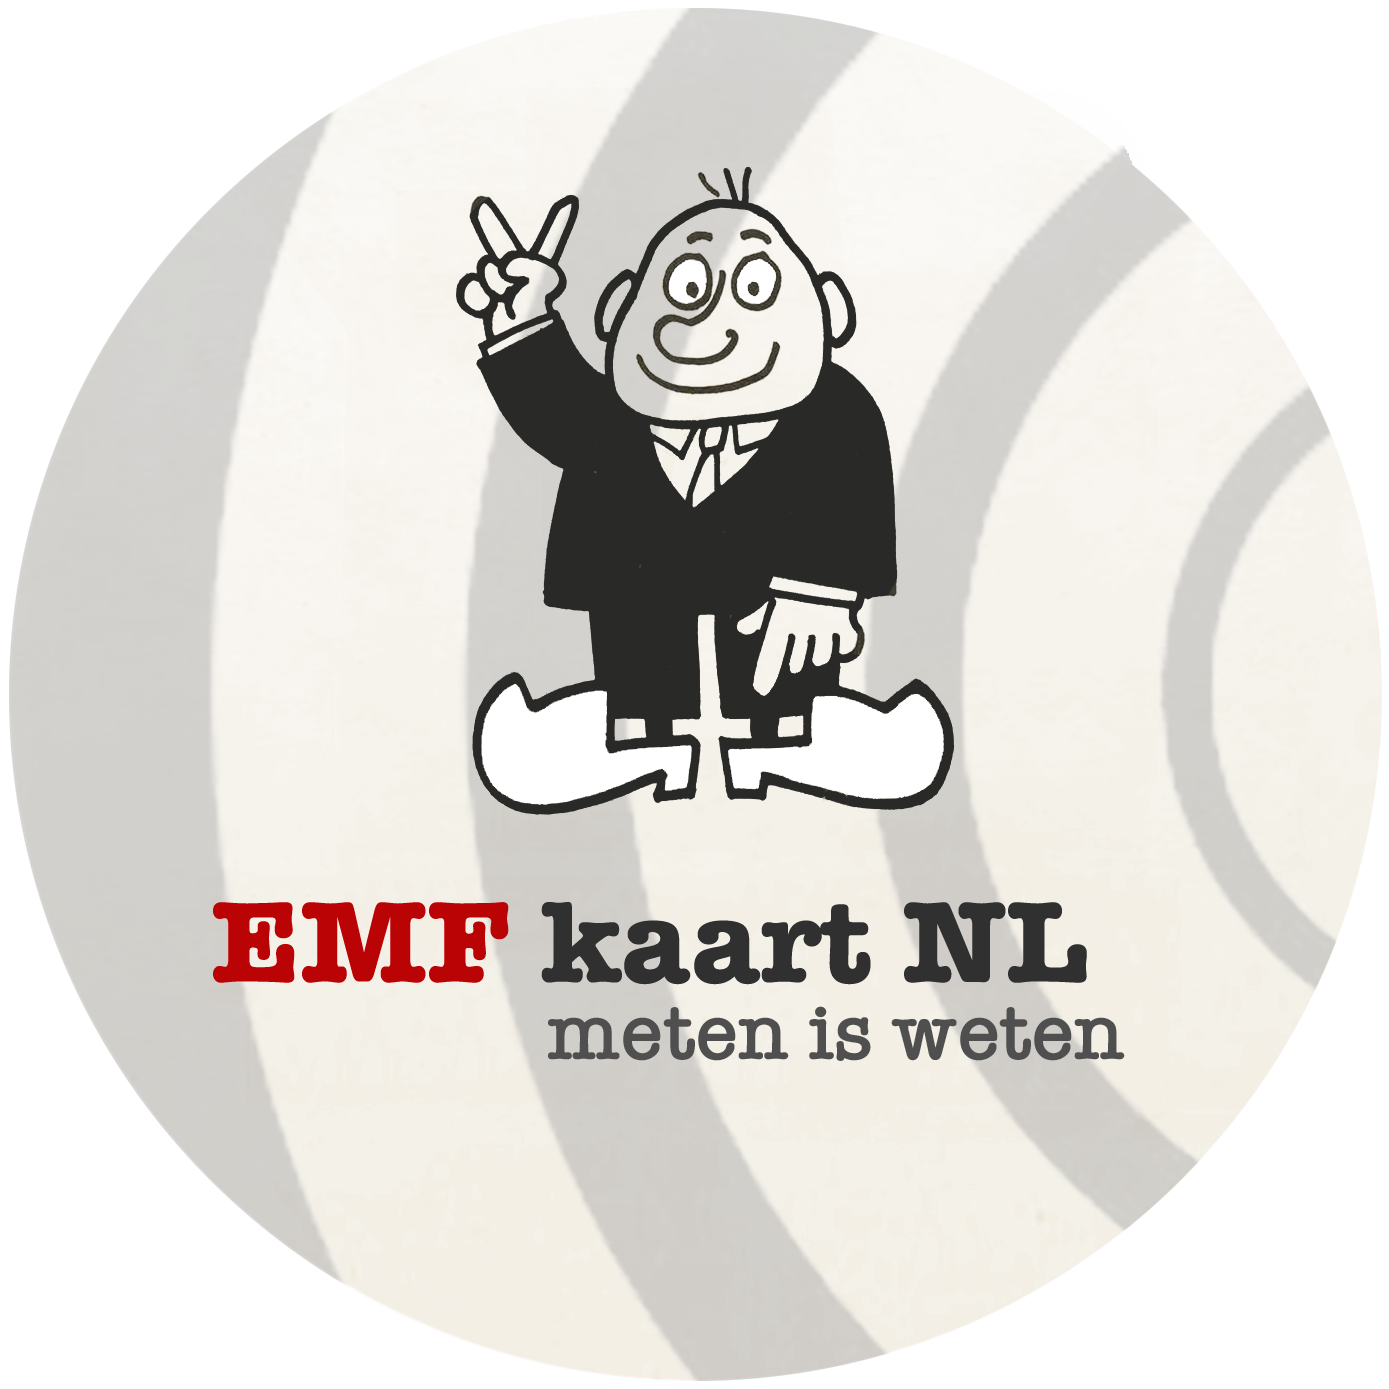 emfkaart.nl/ meten=weten